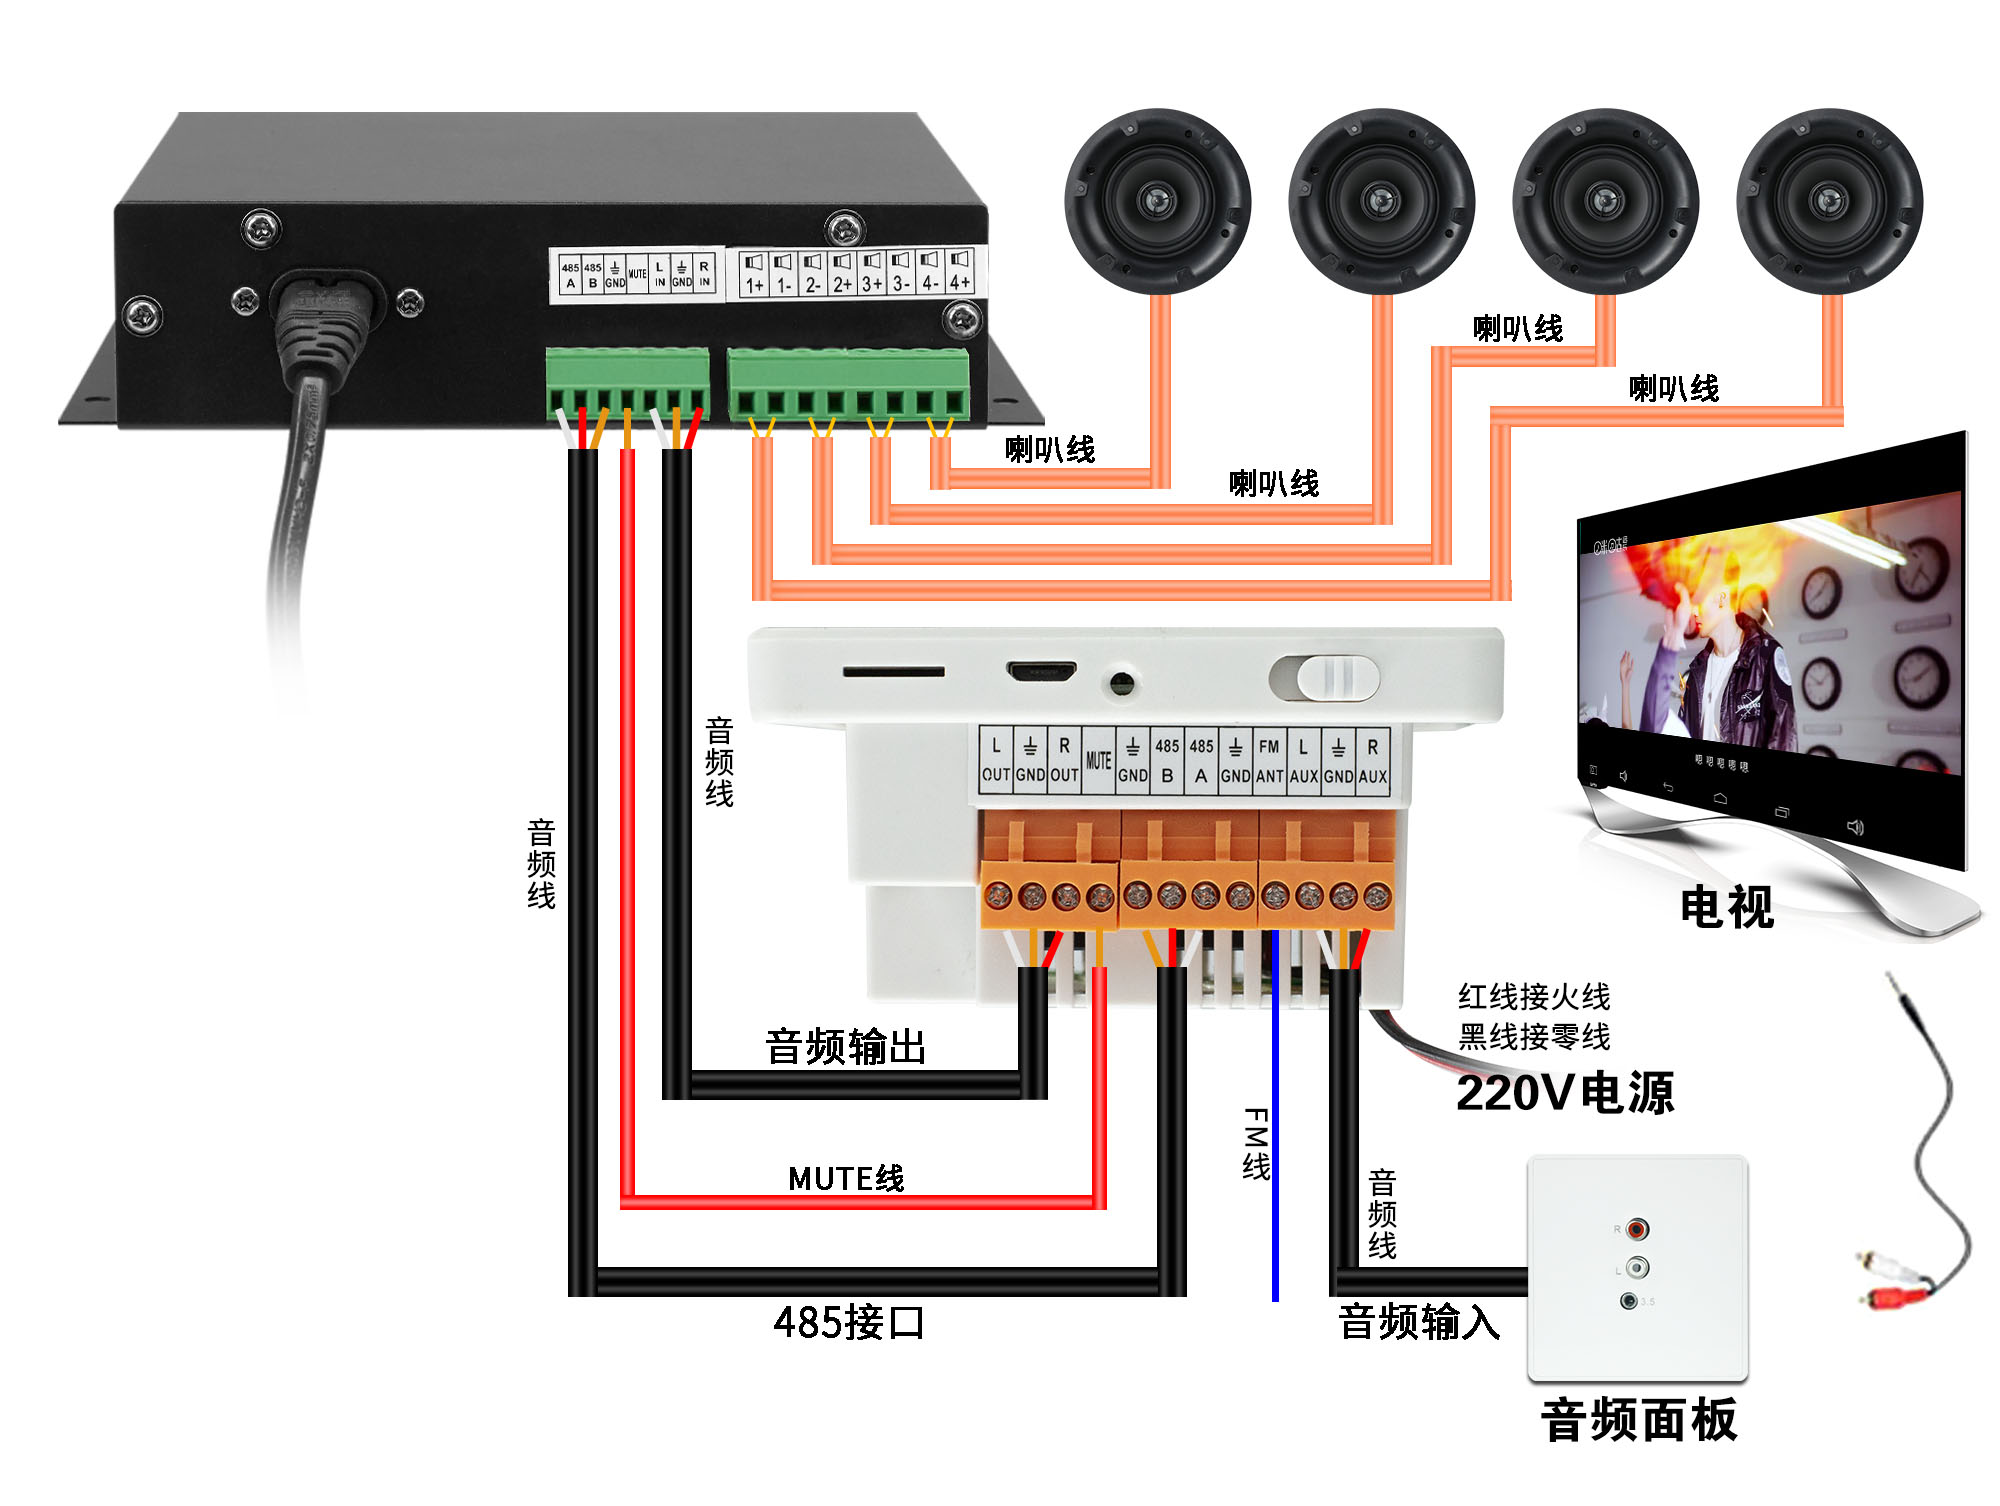 天籁TL-JX809 分体式智能背景音乐控制器 说明书插图3